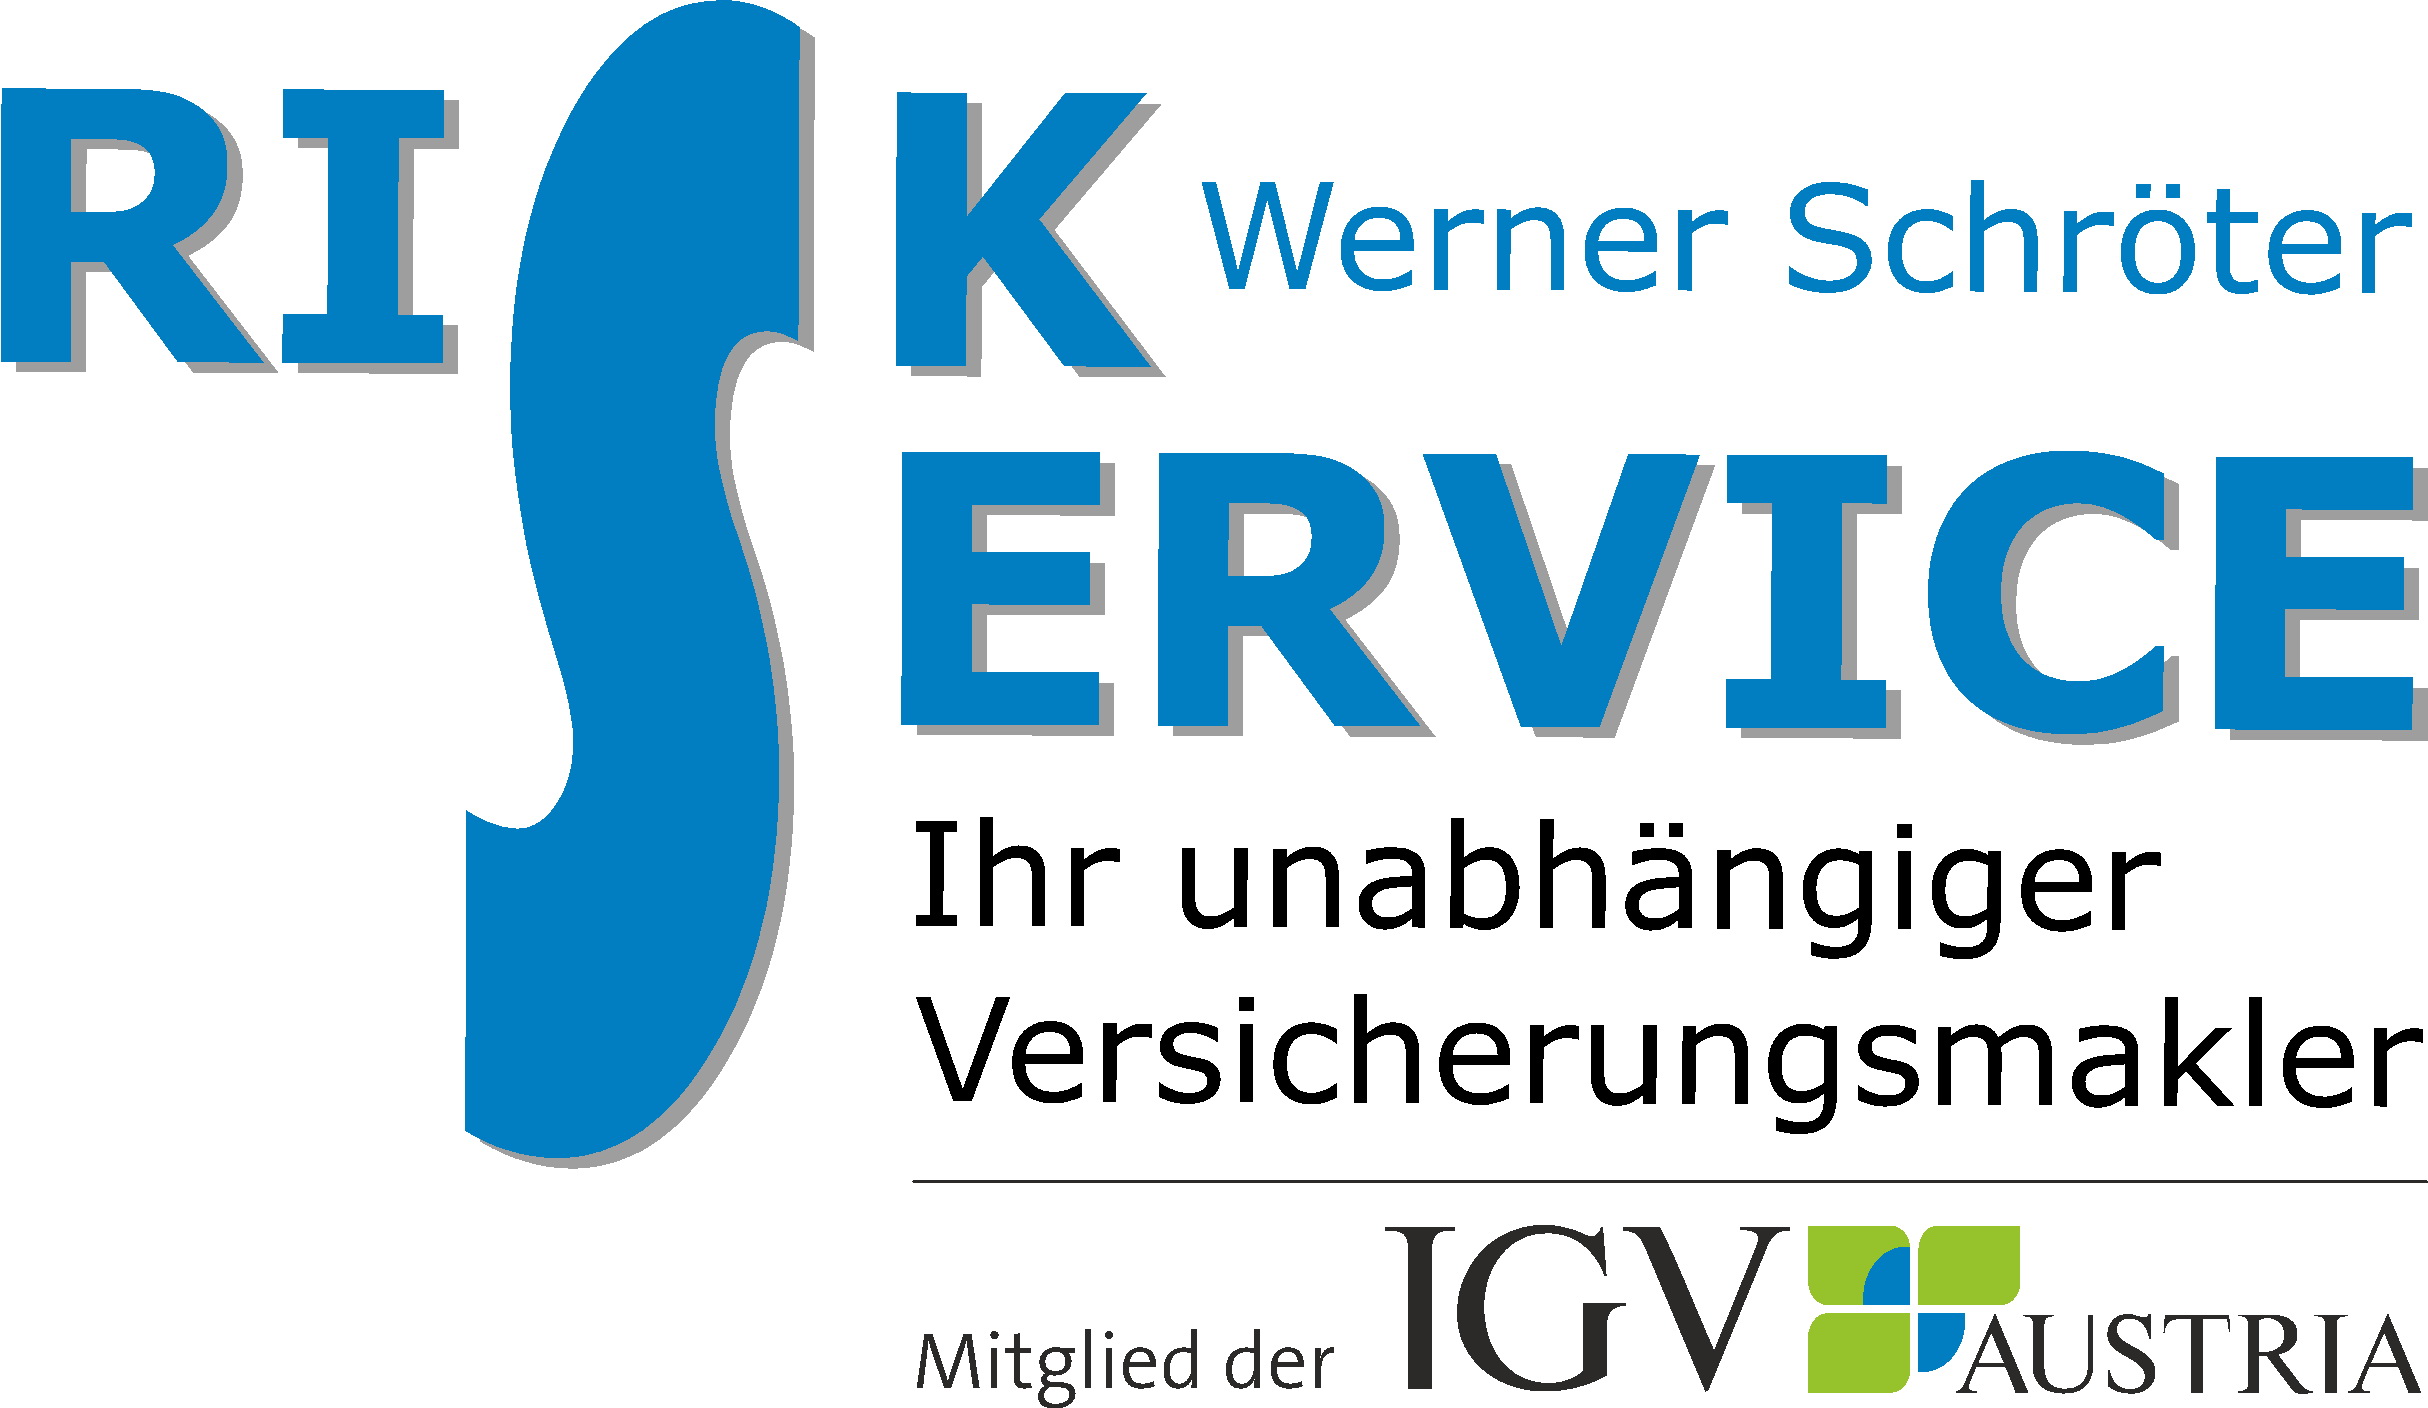 RiskService Werner Schroeter